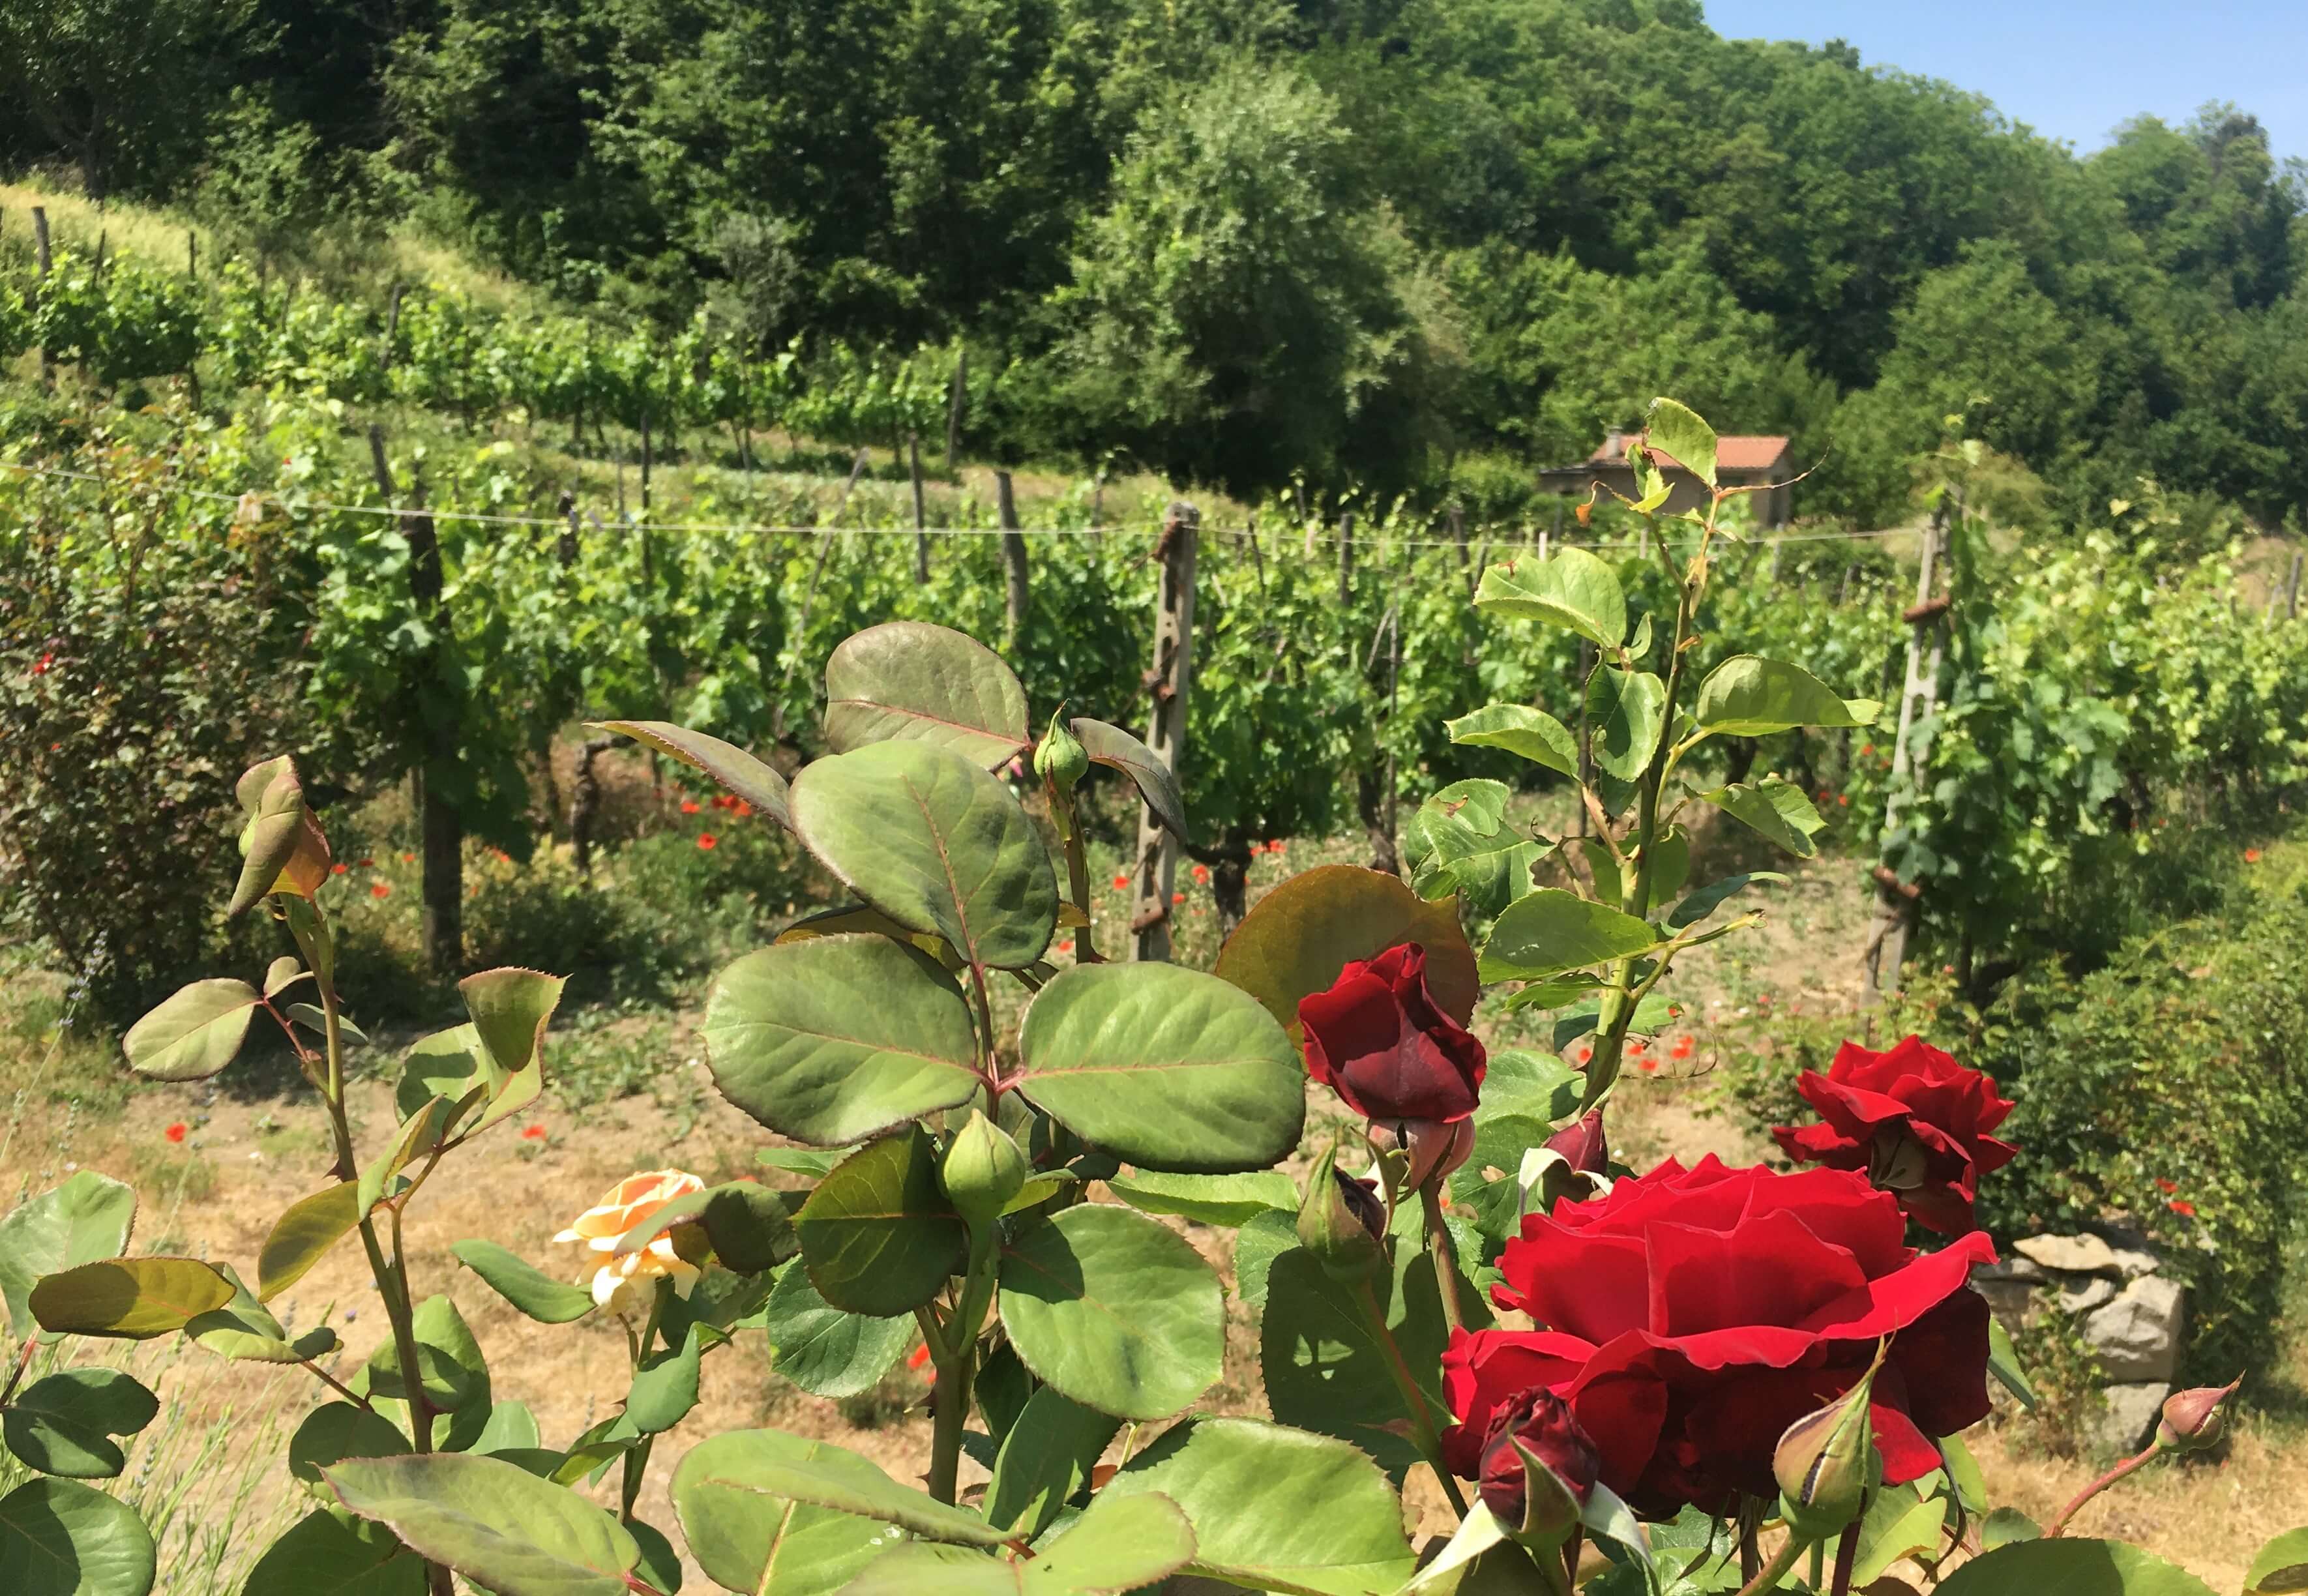 Har du lurt på hvorfor det er roser på vingården? De er nyttige for druer og vin. Klikk deg inn for å lese hvorfor de hjelper til å lage god vin. 